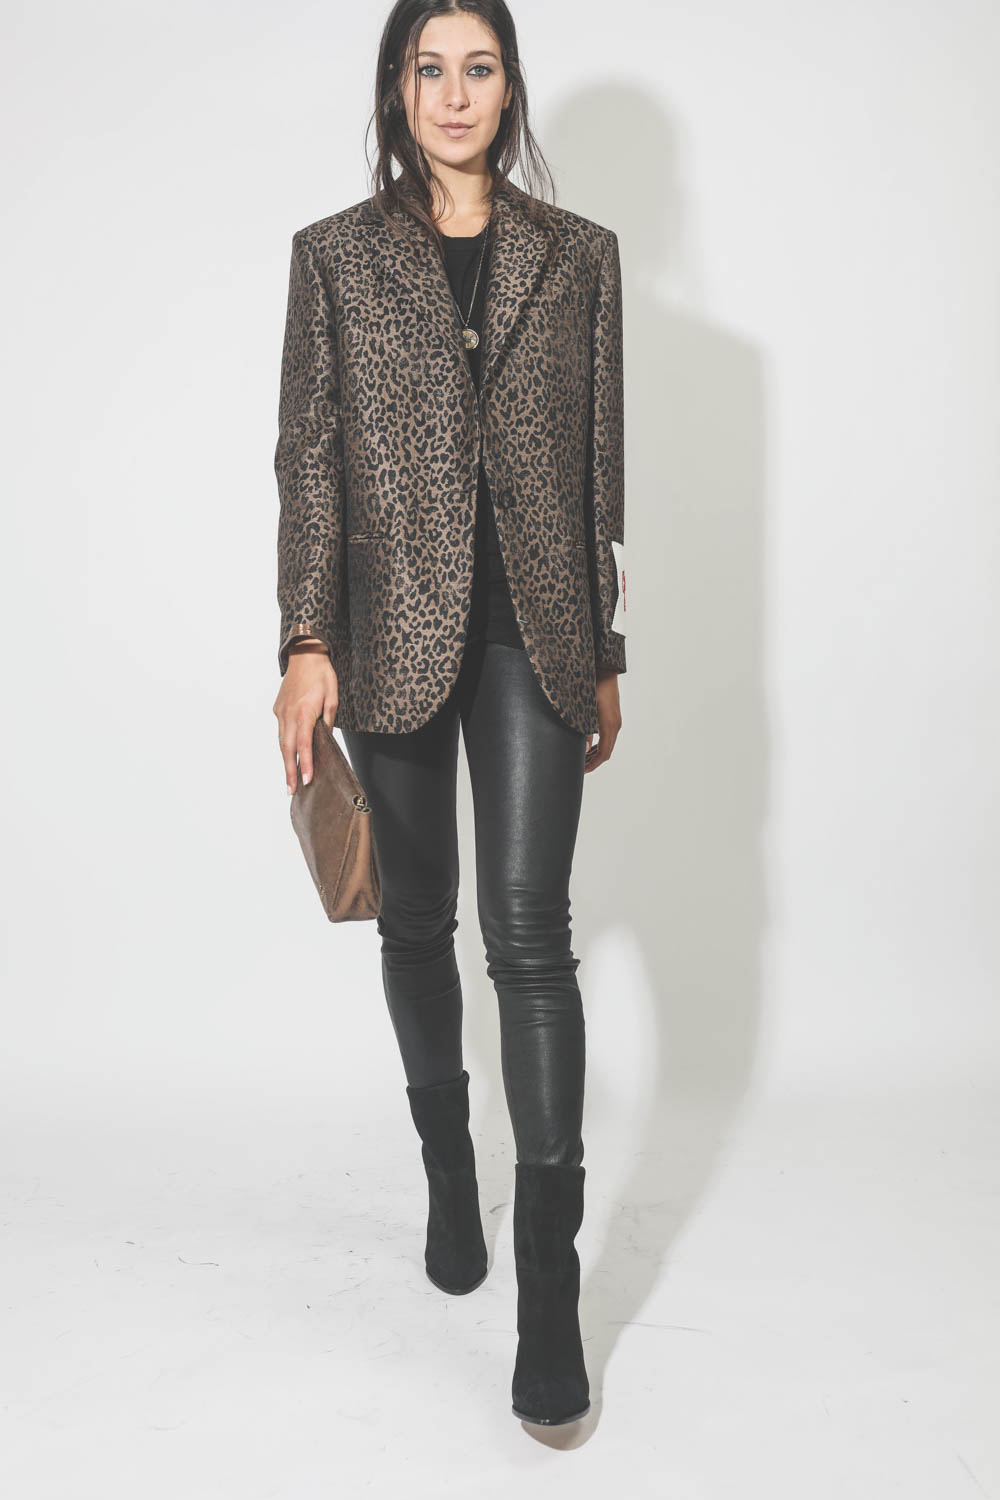 Tee-shirt sans manches asymétrique une fente en lin noir Kella Marant Etoile. Porté avec une veste léopard.